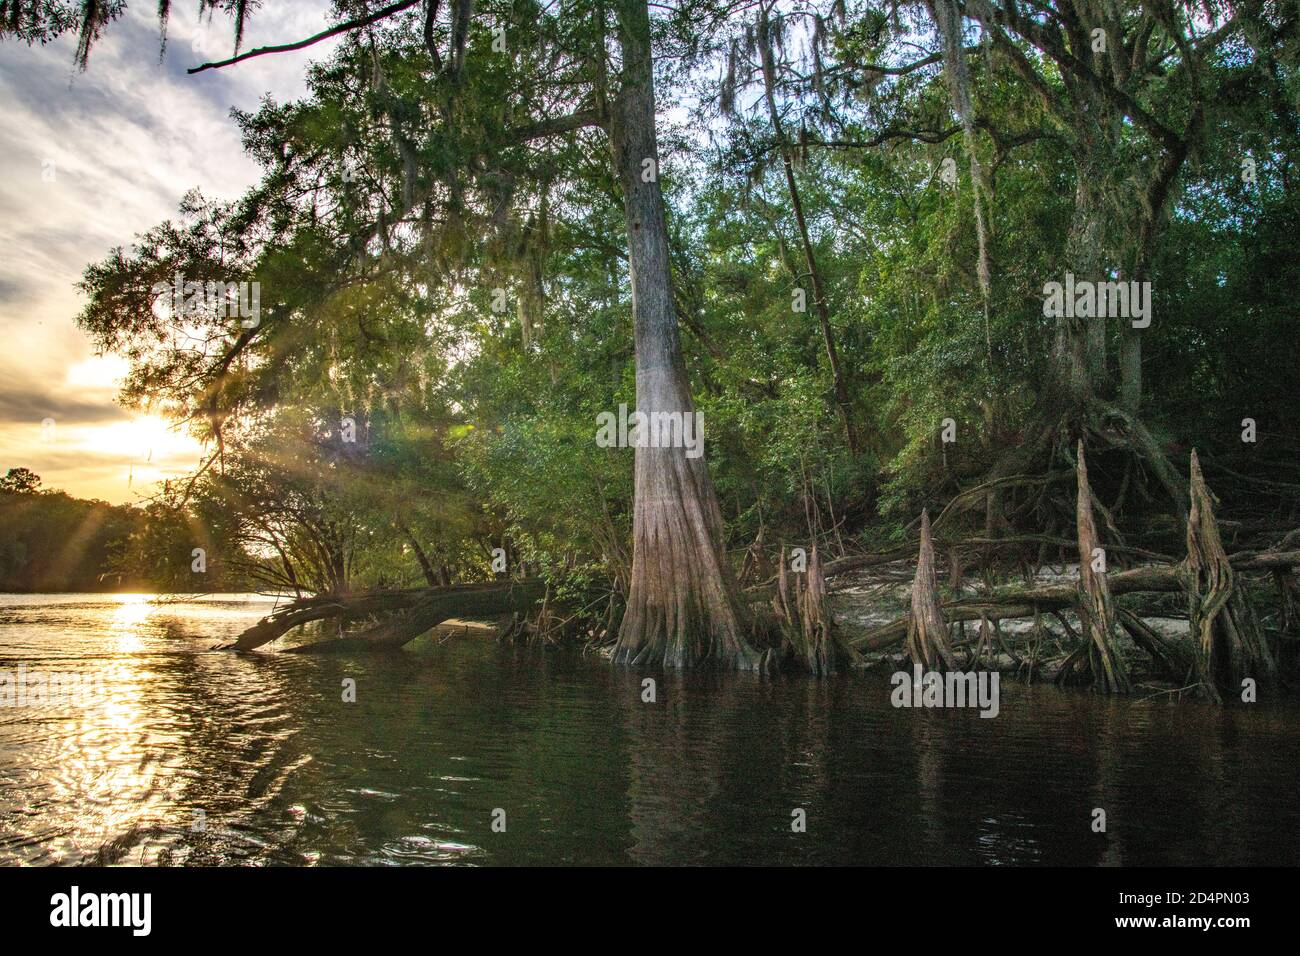 Natürliche Vegetation entlang des Suwanee River Waterway in der Nähe von Rock Bluff, FL Stockfoto